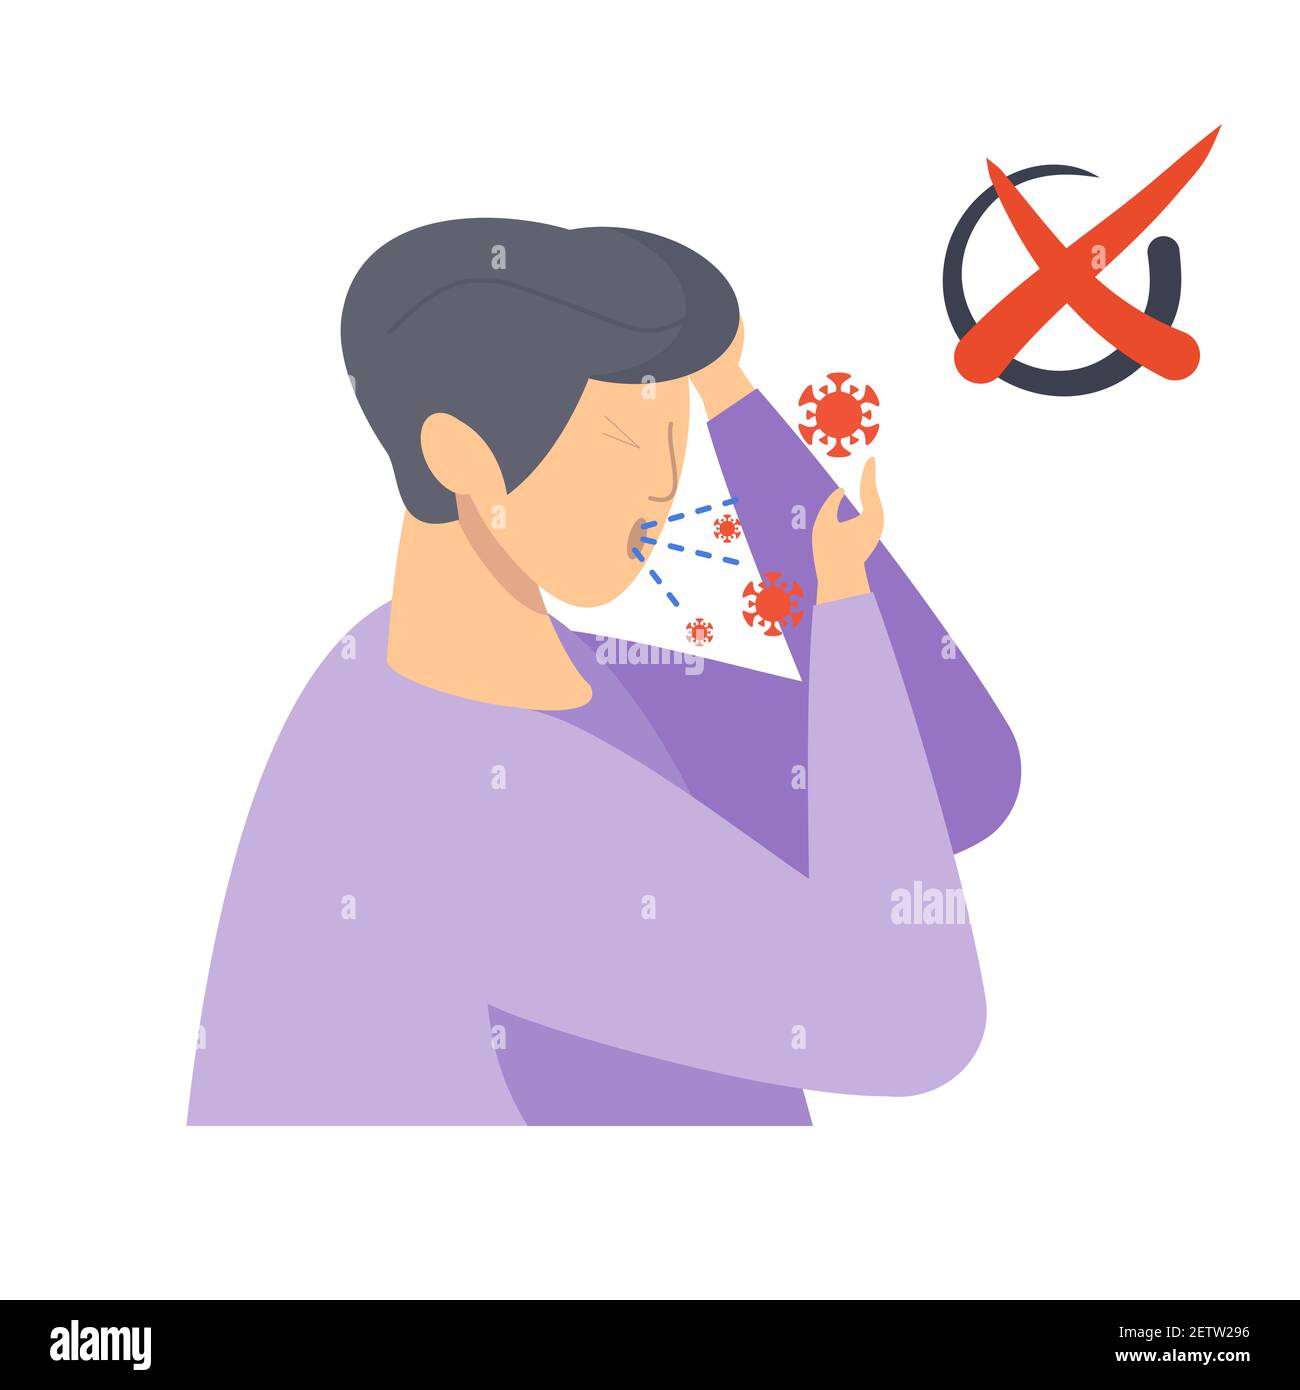 Persona tosse senza coprire la bocca. Immagine piatta vettoriale. Illustrazione Vettoriale